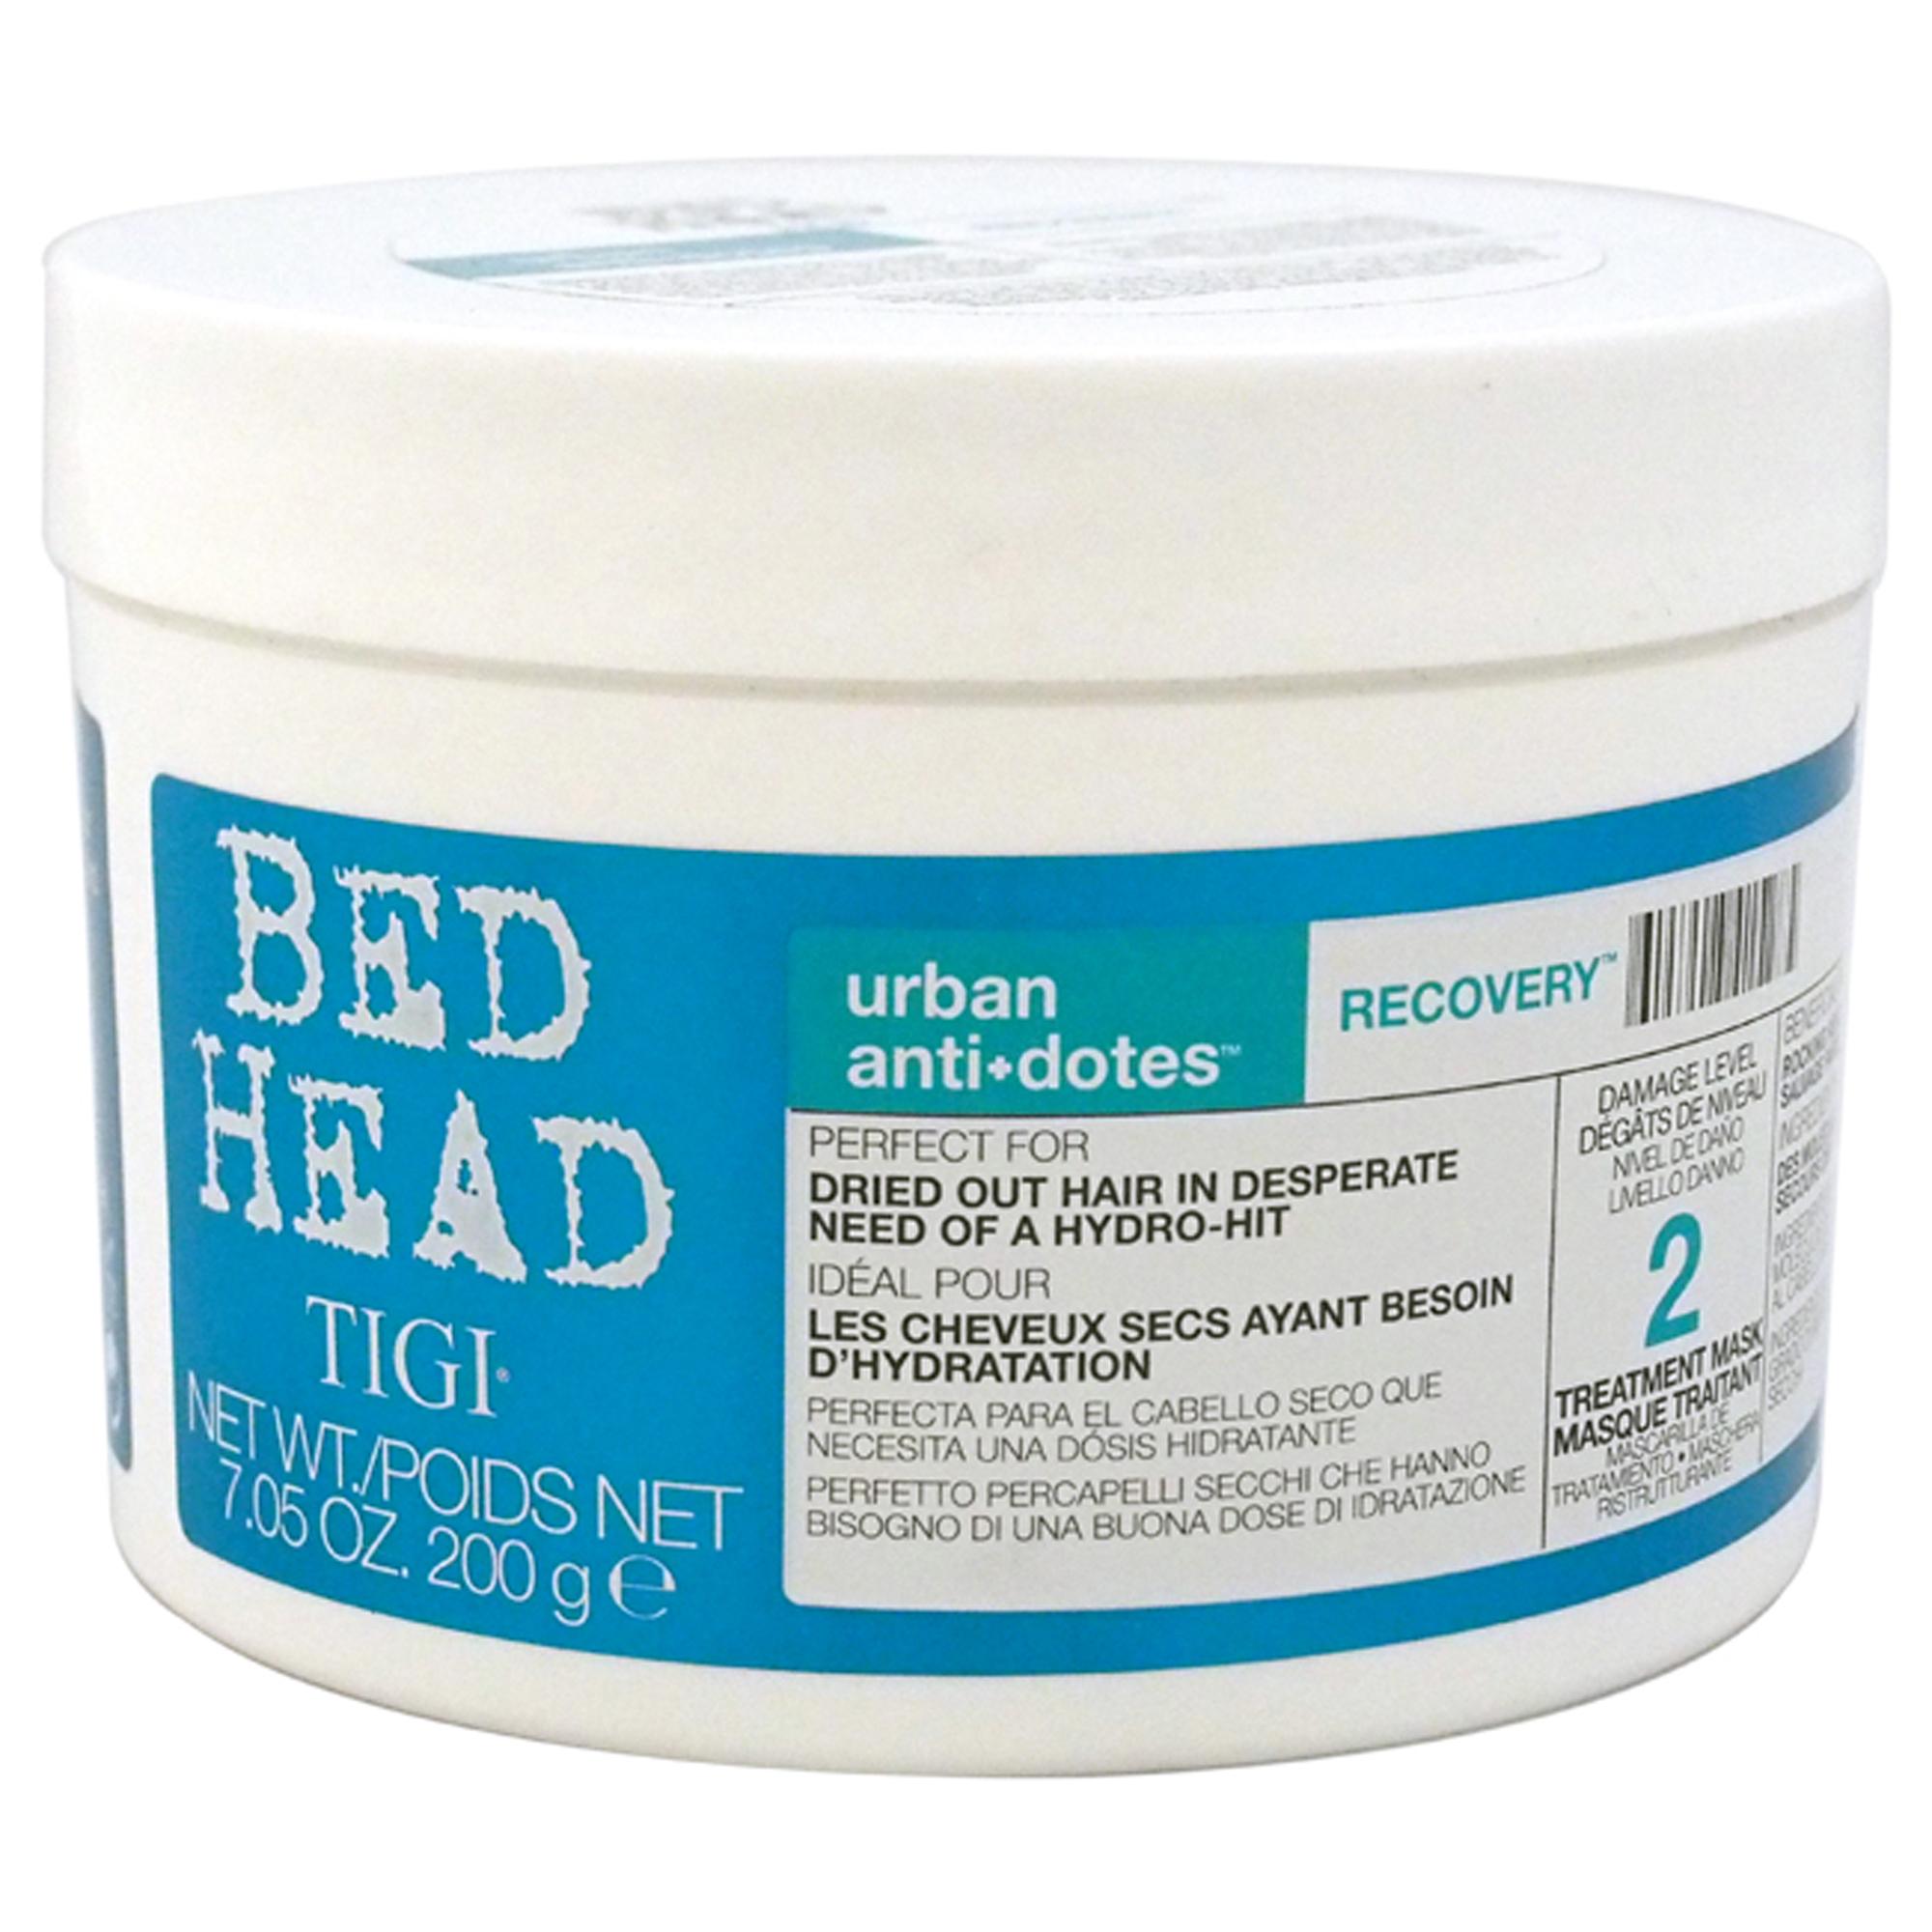 【正規品】【送料無料 】 TIGI Bed Head Urban Anti + Dots Recovery Treatment Mask ティジー ベッドヘッド アーバン アンチ＋ ドーツ リカバリー トリートメント マスク 200g 7.05oz 【海外直送】